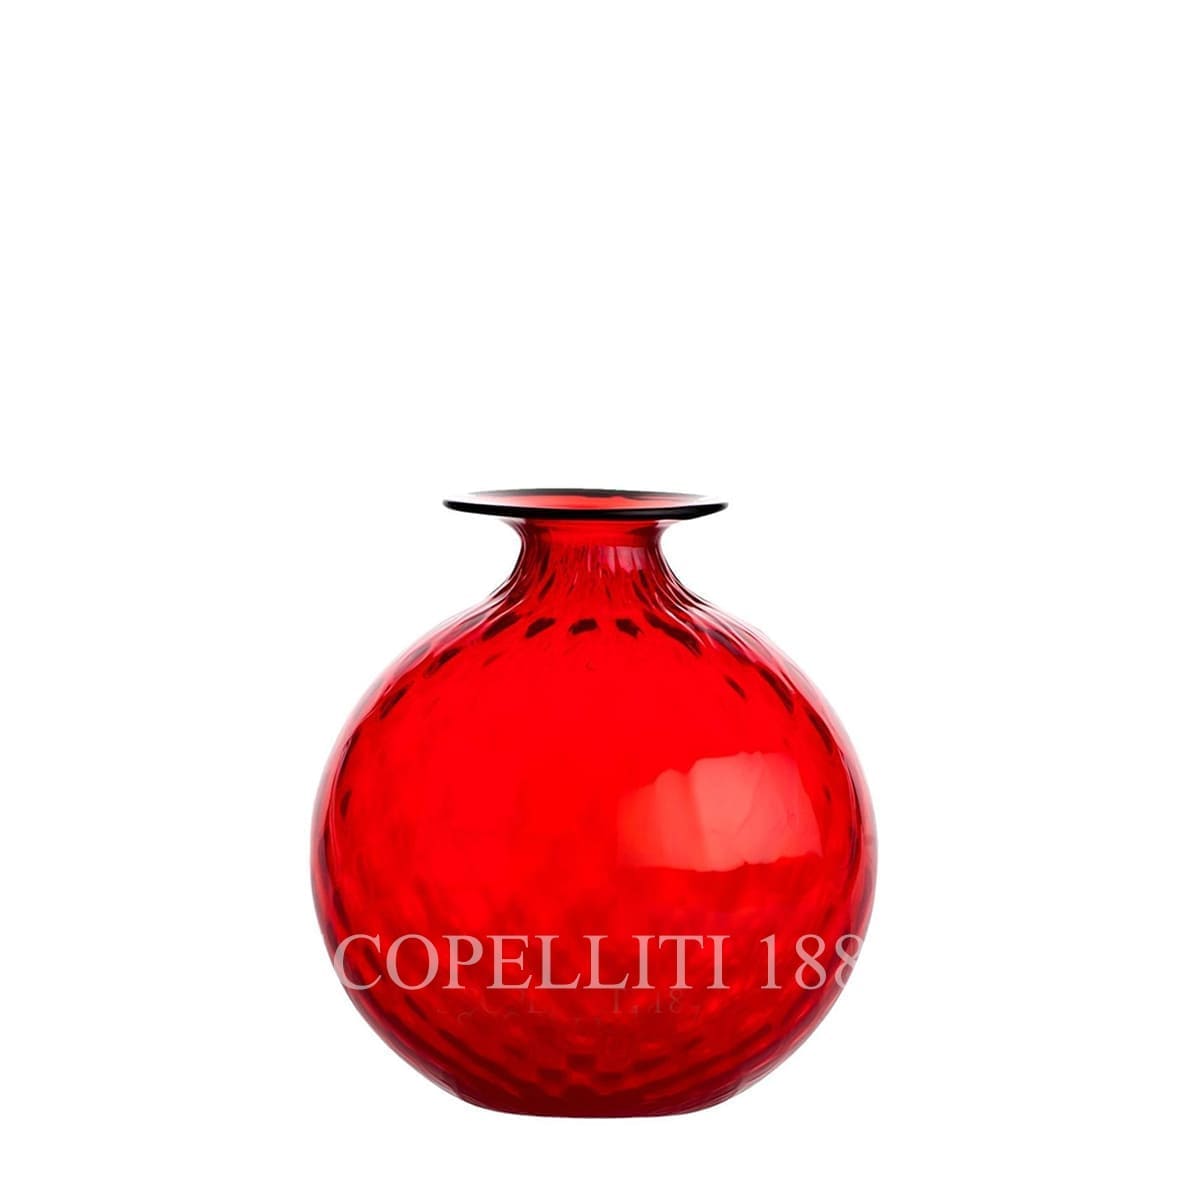 venini murano glass italian monofiore balloton vase limited edition red